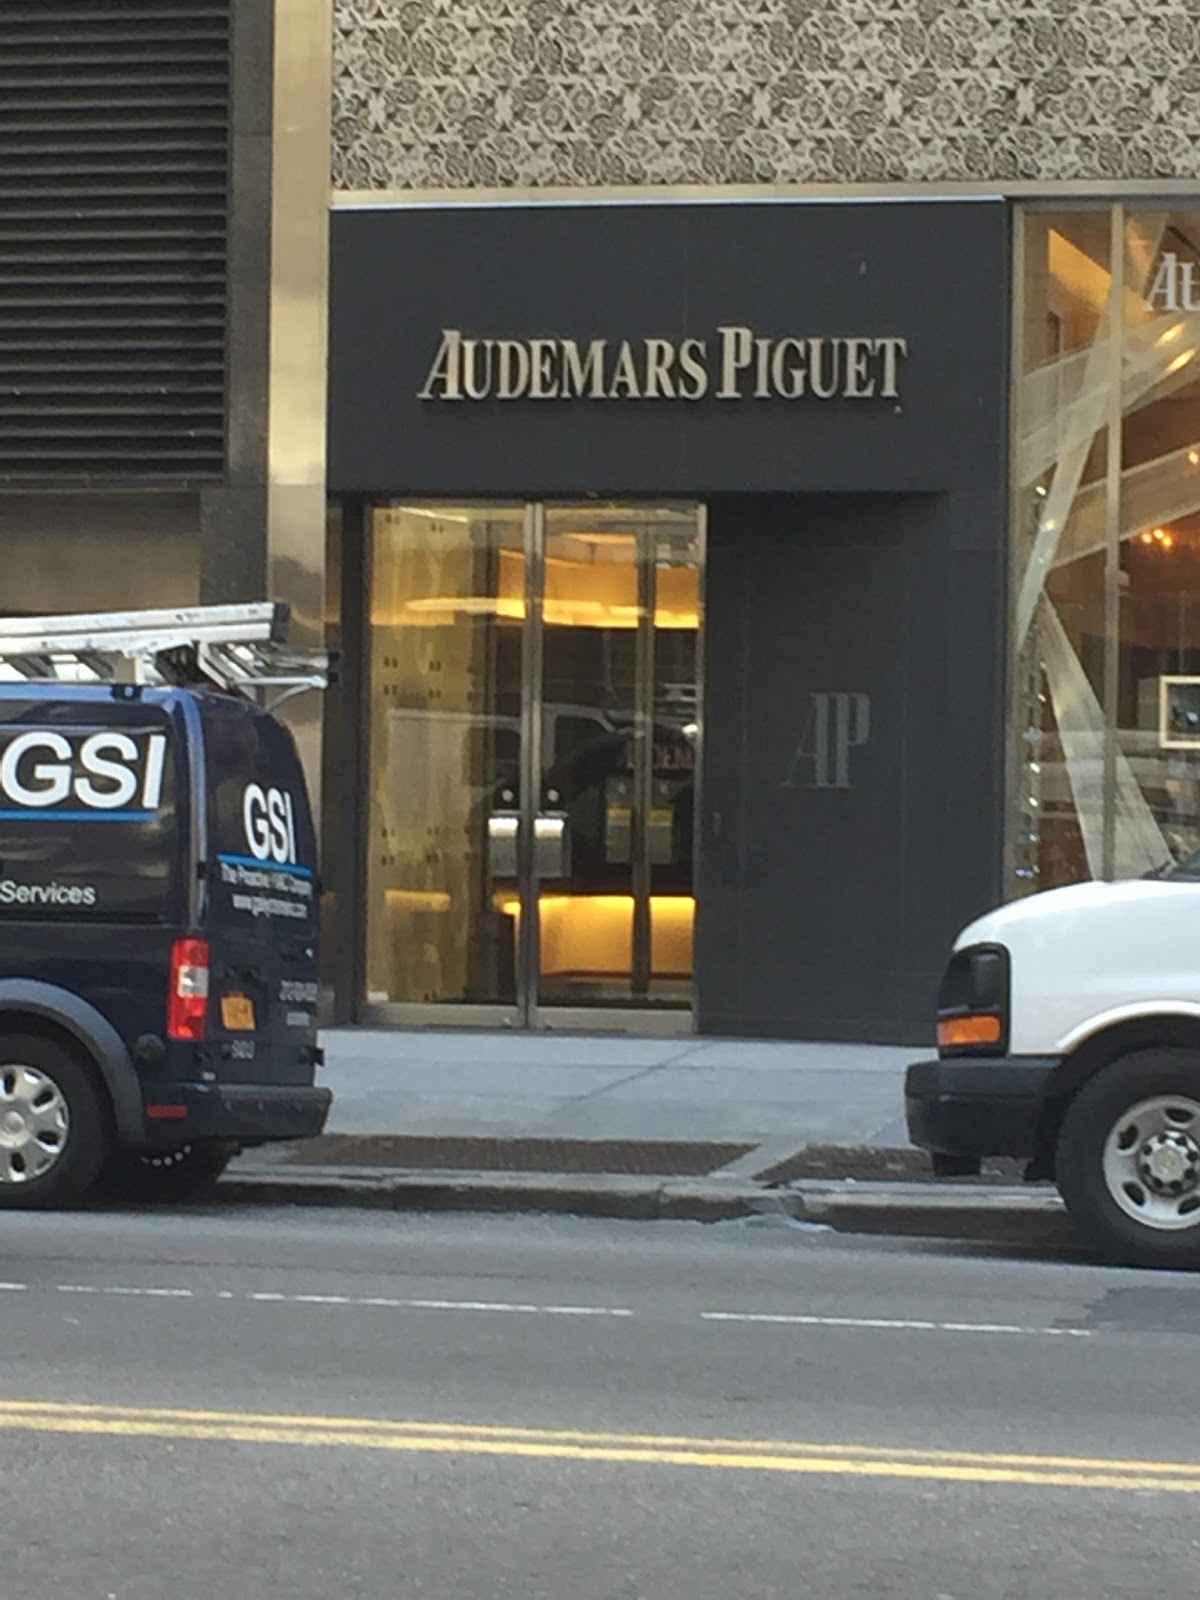 Photo of Audemars Piguet, Boutique New York City in New York City, New York, United States - 3 Picture of Point of interest, Establishment, Store